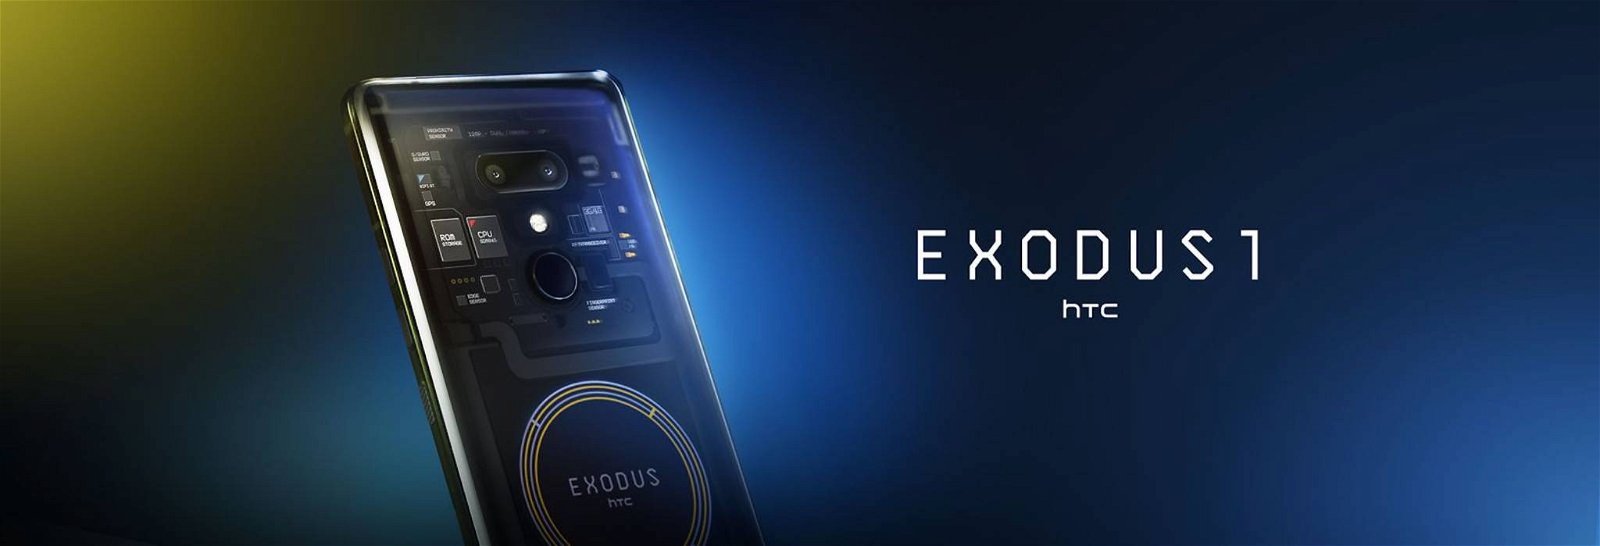 Immagine di HTC Exodus 1: partono le prenotazioni dello smartphone blockchain, ecco le specifiche tecniche